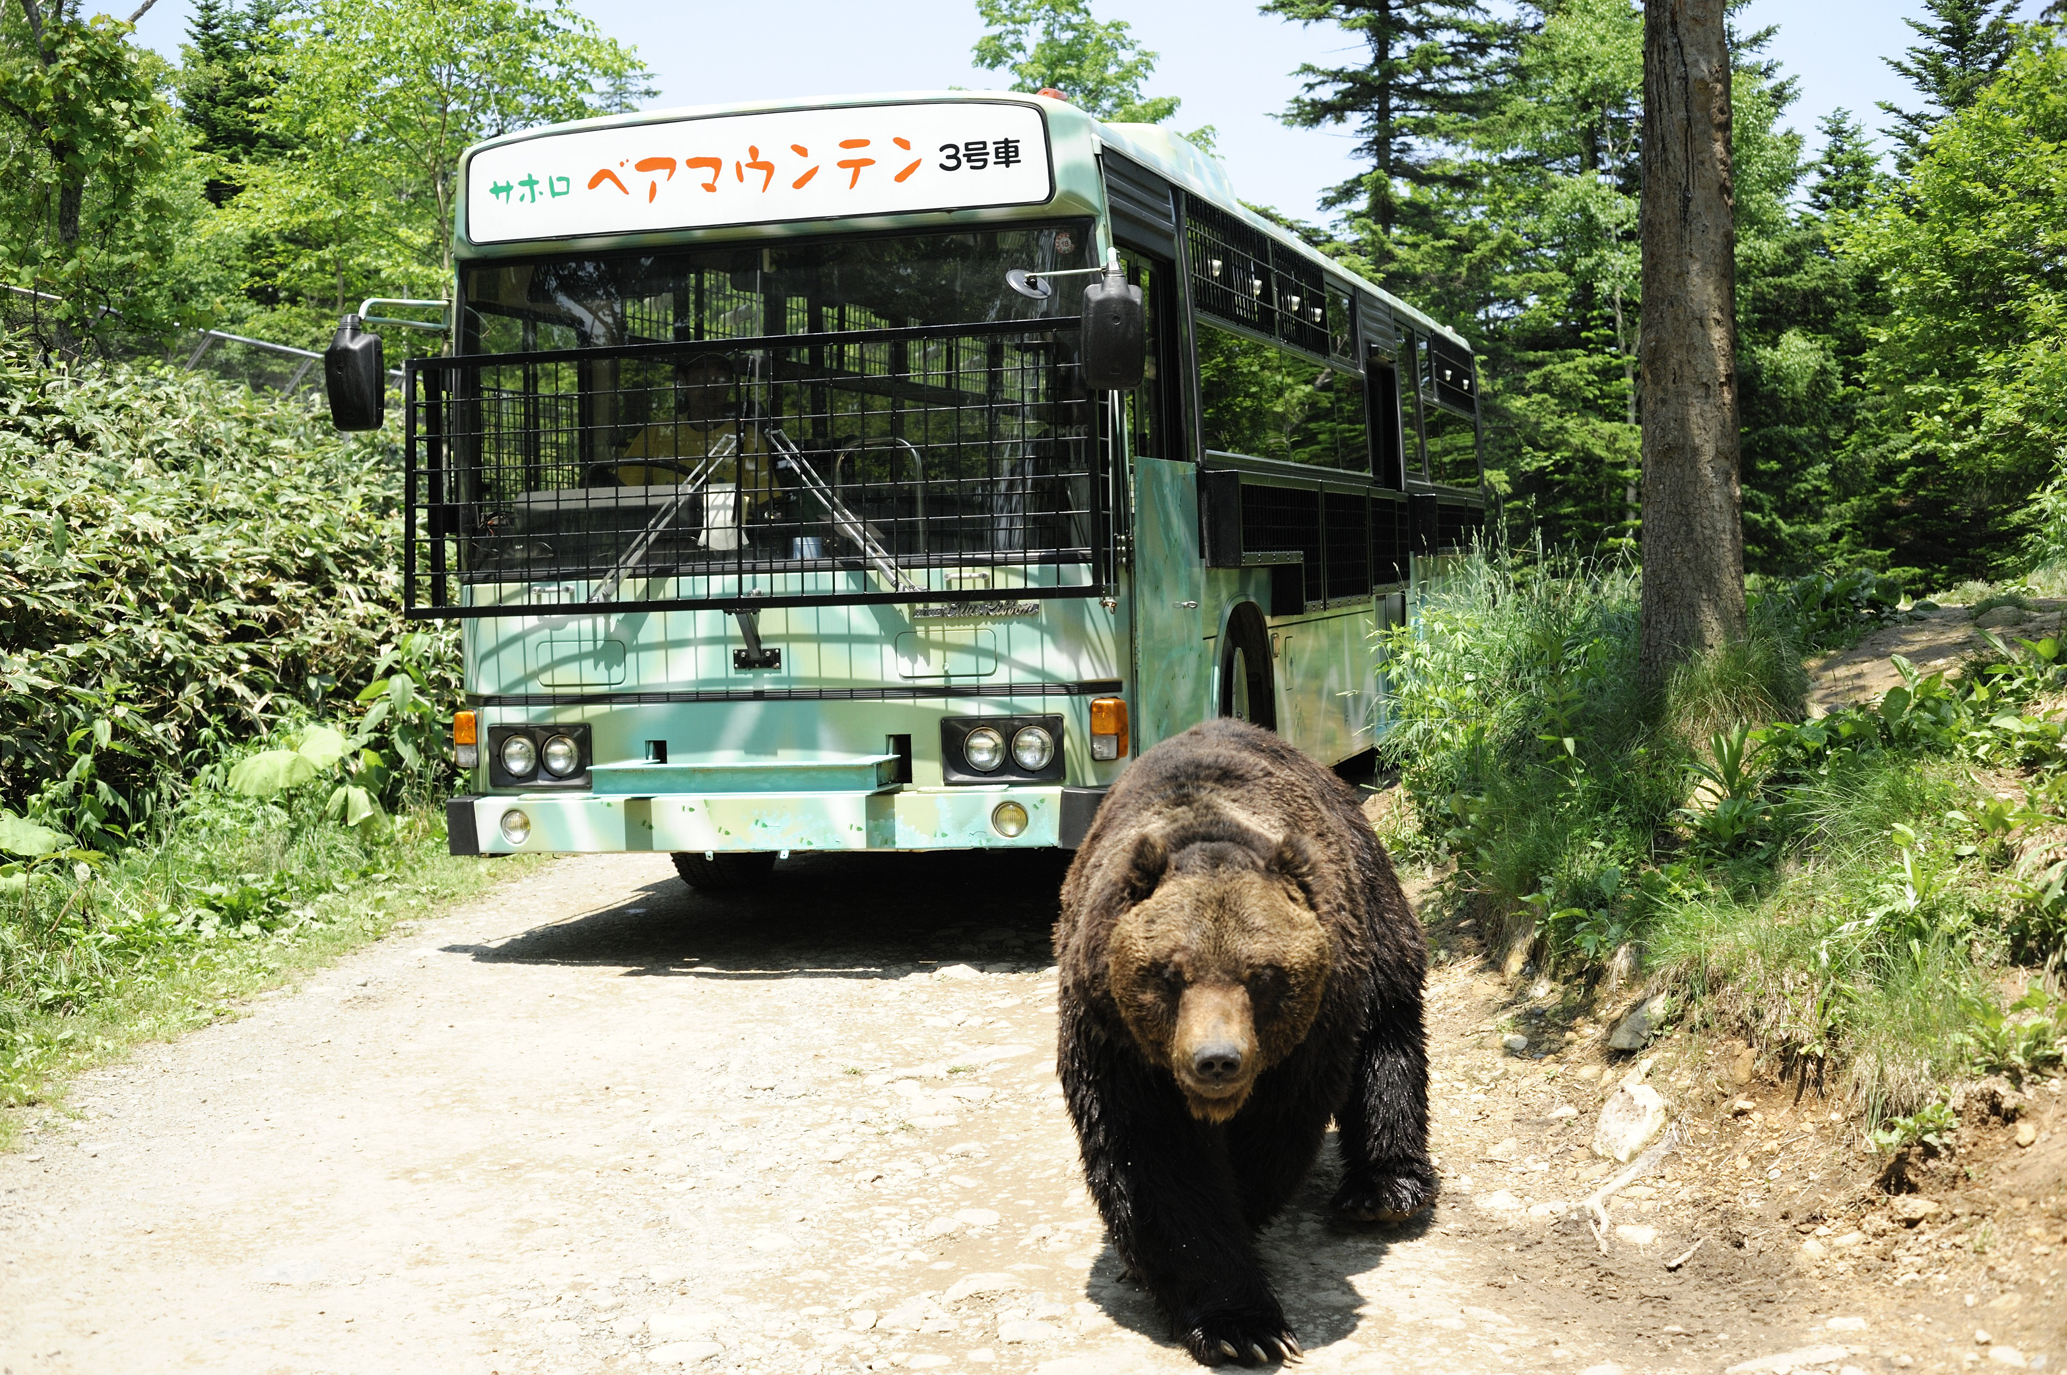 观熊巴士课程